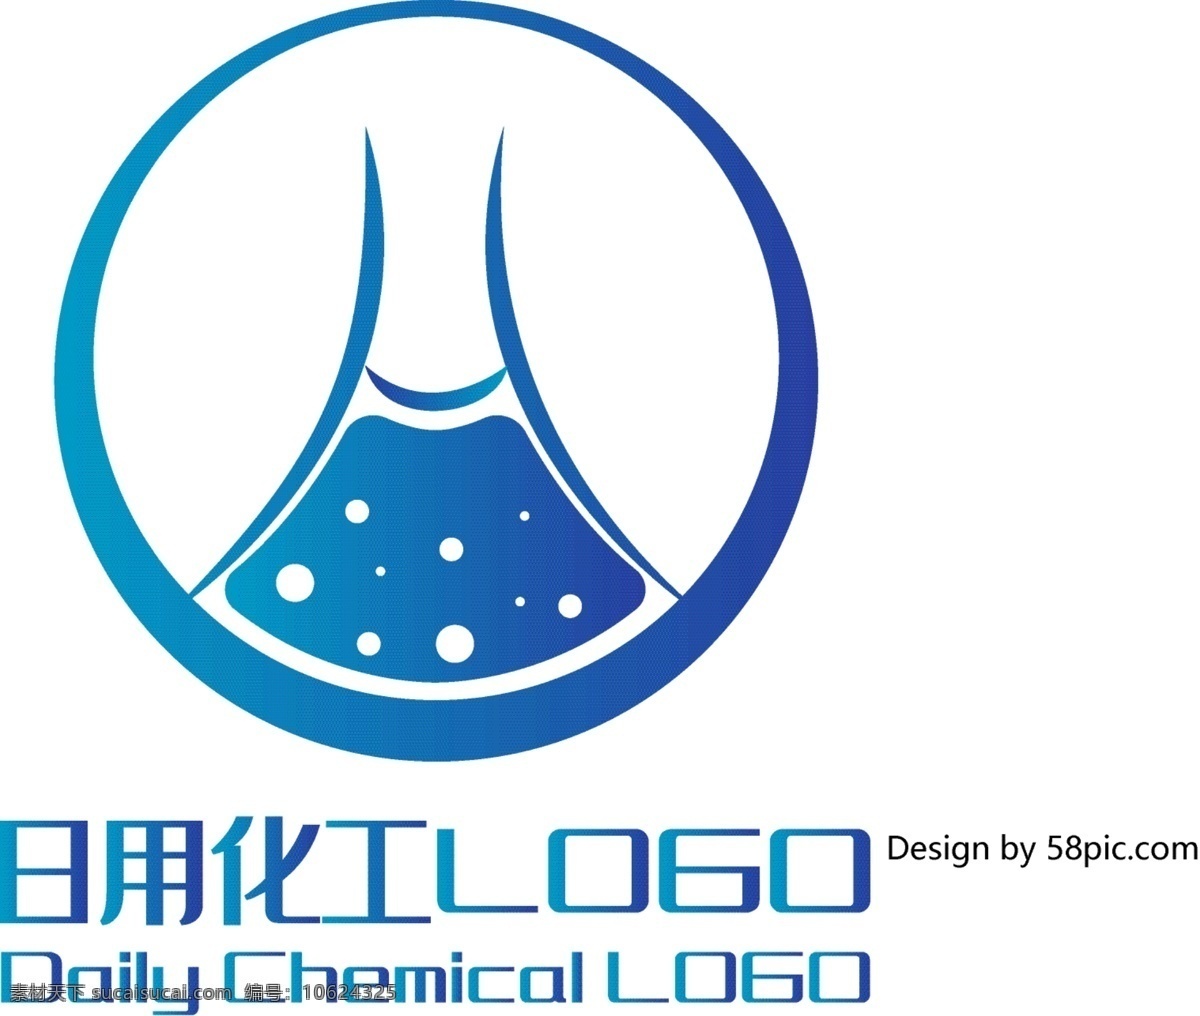 原创 创意 简约 化学 瓶 h 字 日用化工 logo 可商用 化学瓶 字体设计 日用 化工 标志